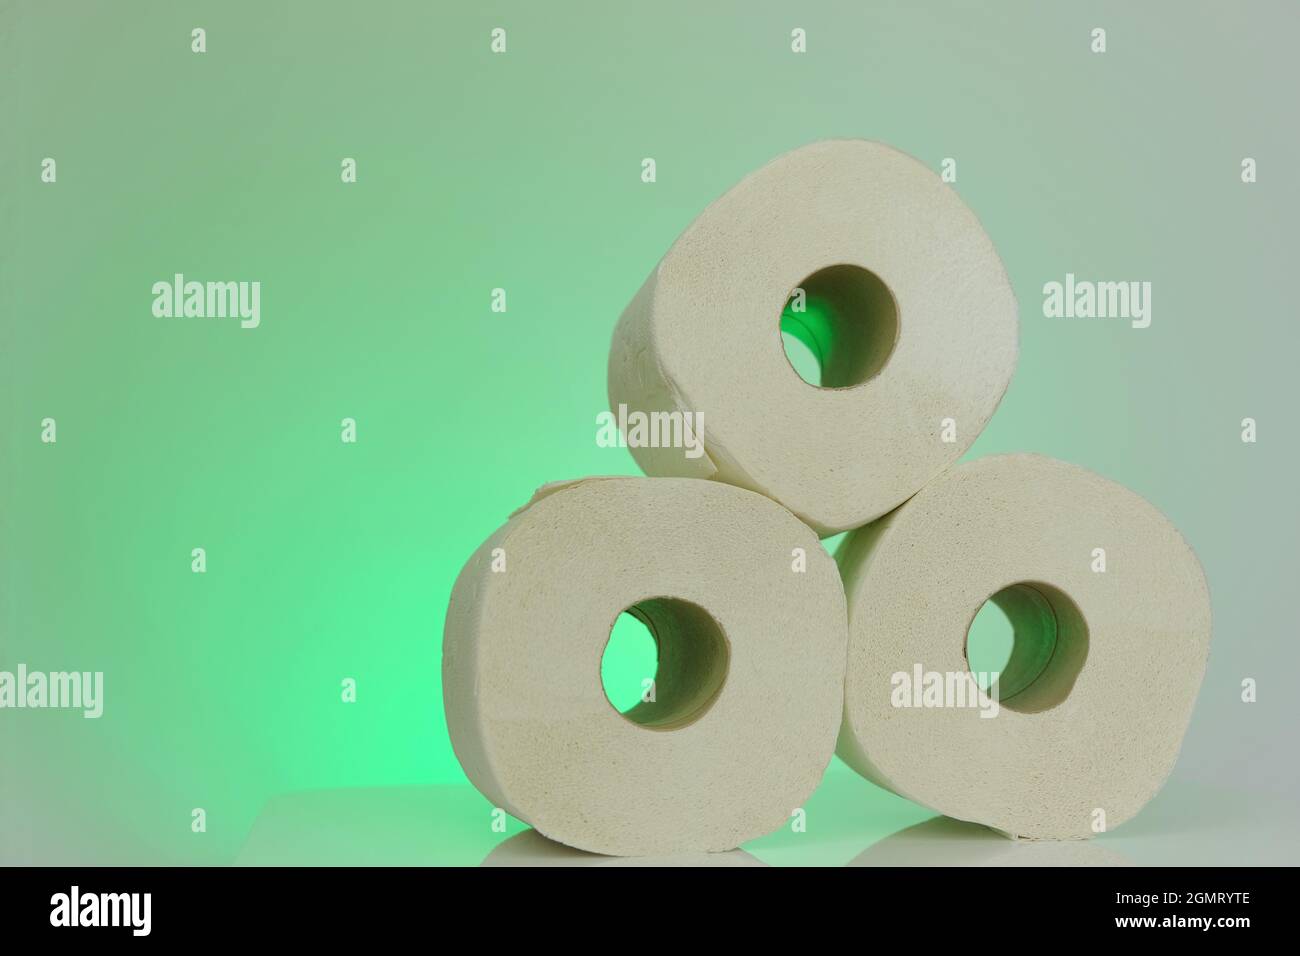 Rouleaux de papier toilette . rouleaux de papier toilette bio sur fond vert clair.concept d'hygiène et de propreté Banque D'Images